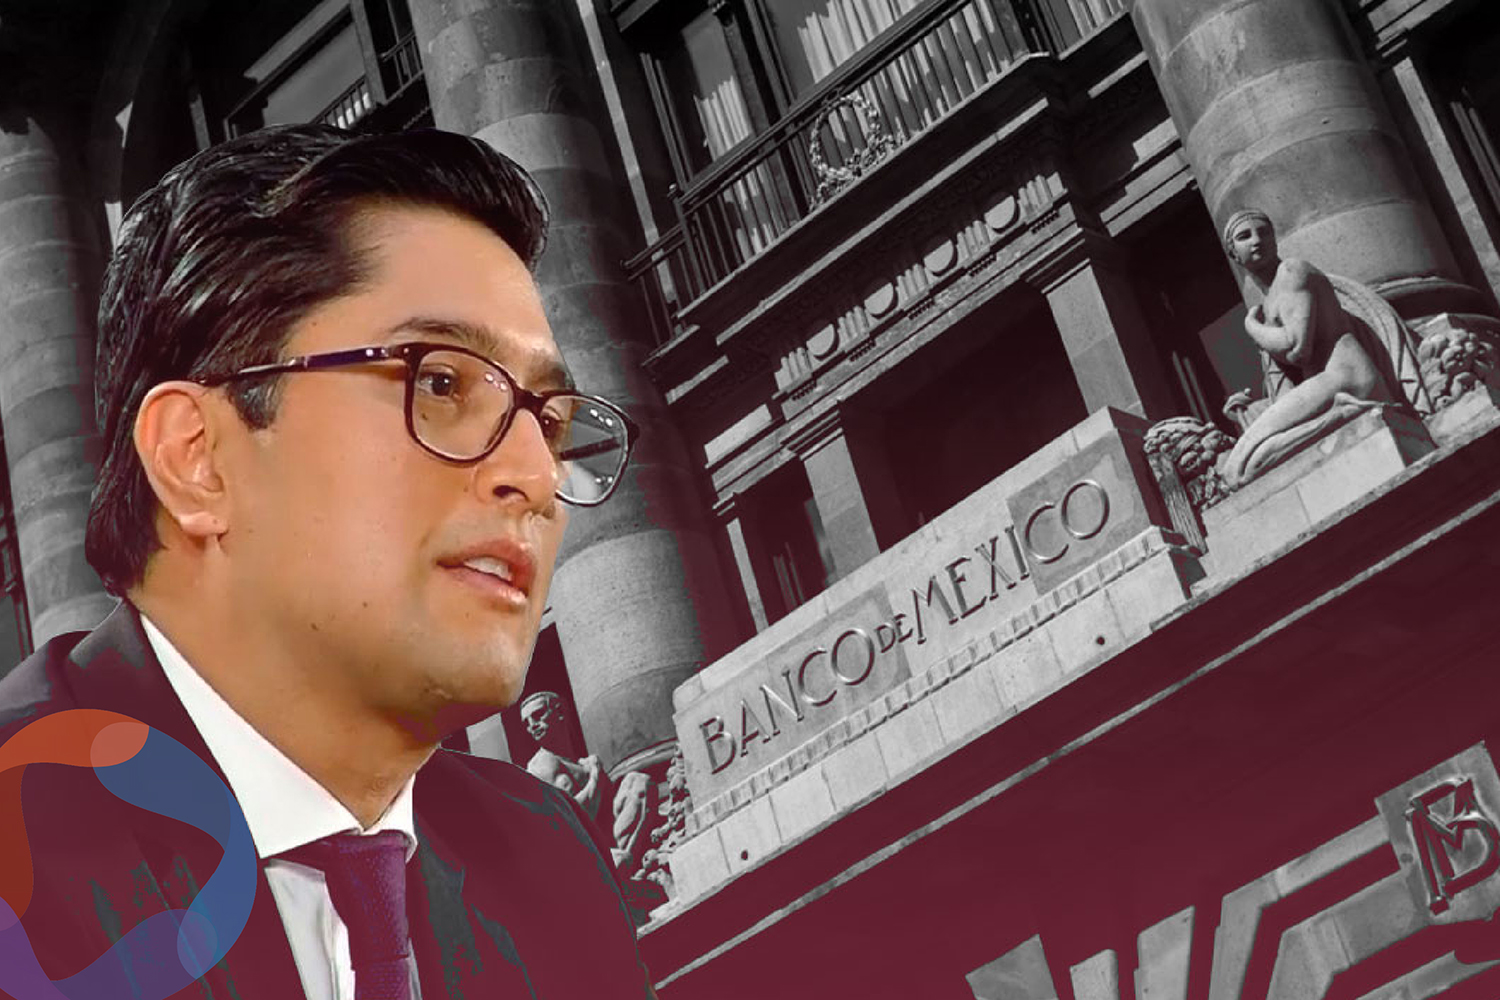 Banqueros felicitan a Omar Mejía Castelazo por su nombramiento en Banxico